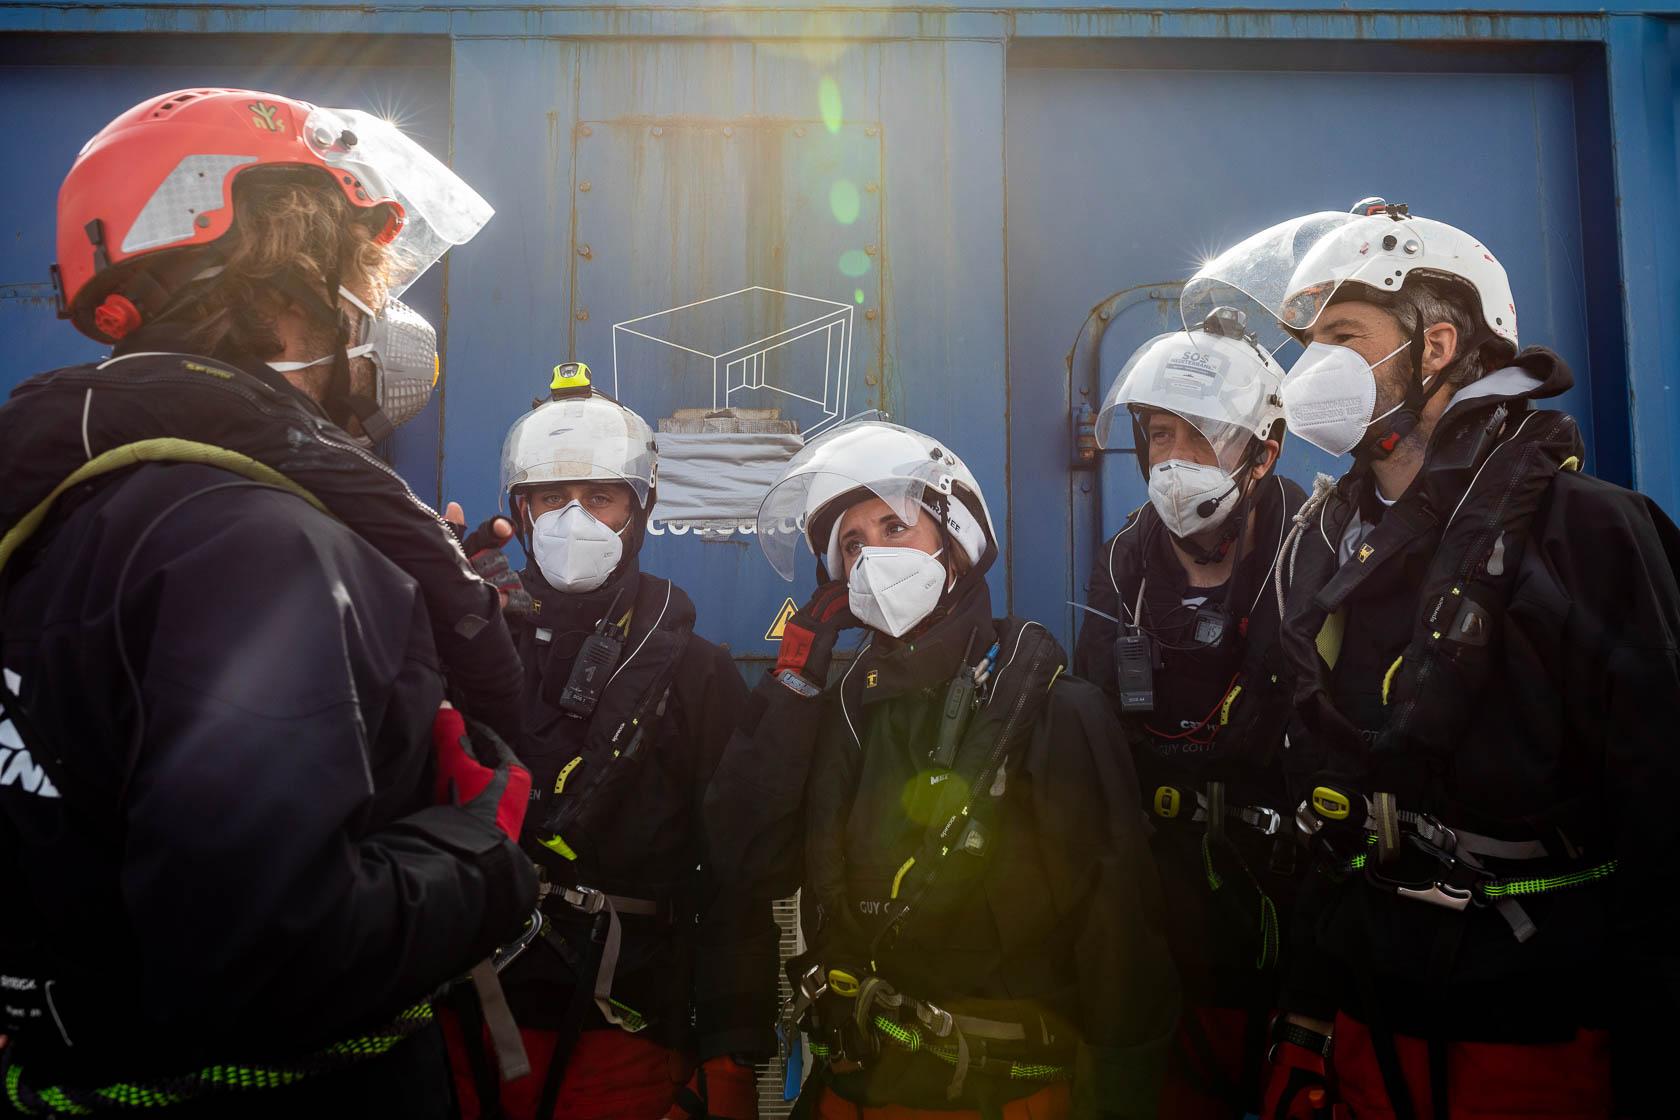 Jérémie (gauche), responsable des sauvetages, briefe son équipe avant leur intervention alors qu’une embarcation en danger vient d’être repérée. Méditerranée Centrale. Mars 2021